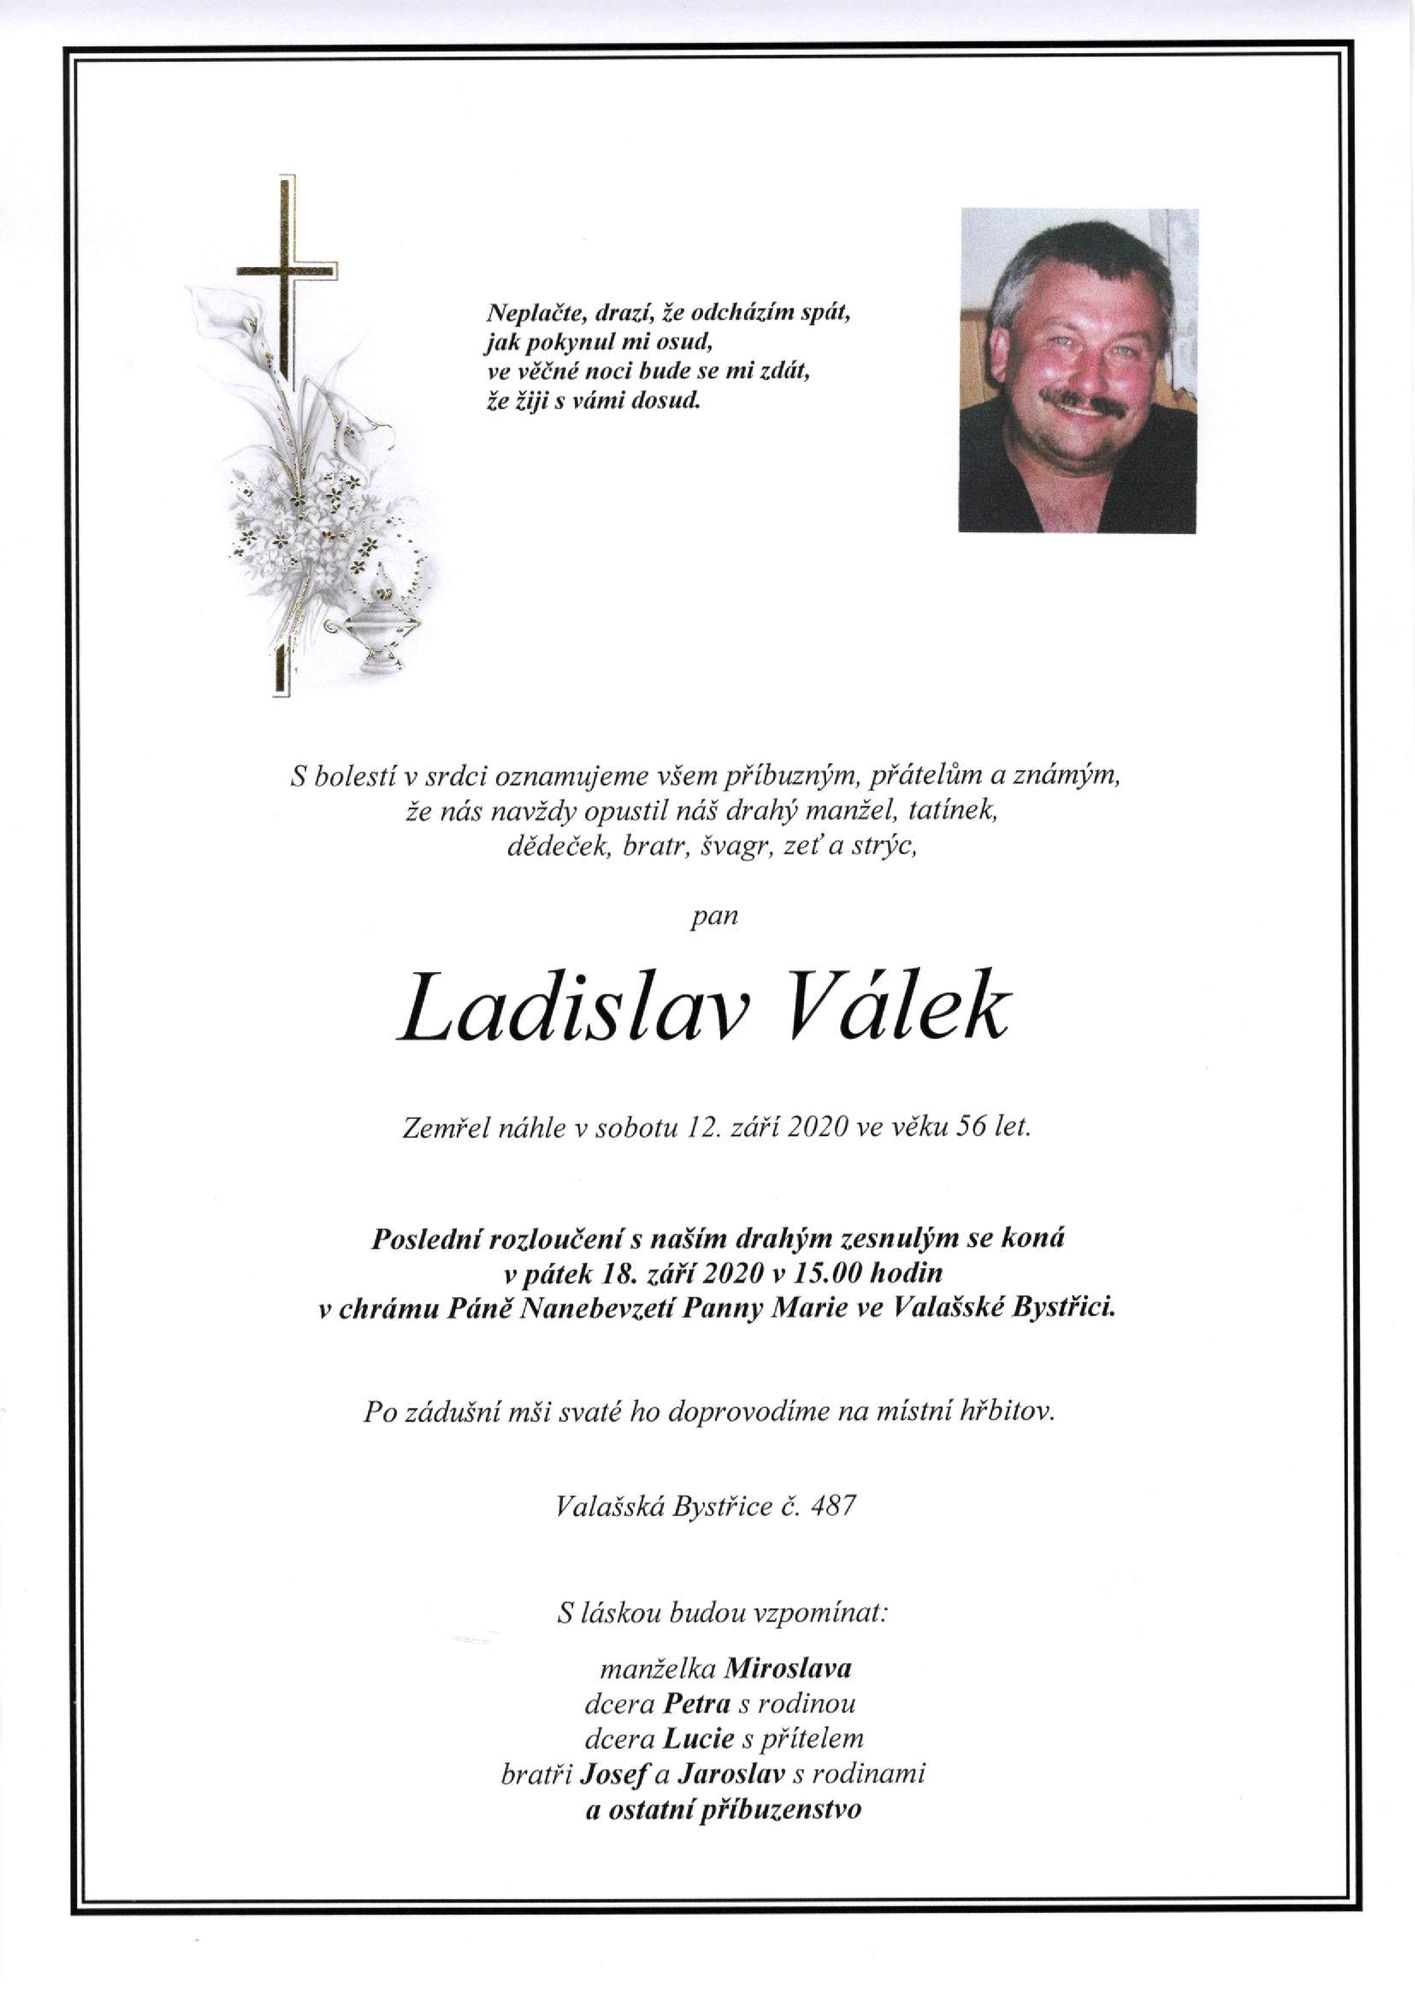 Ladislav Válek